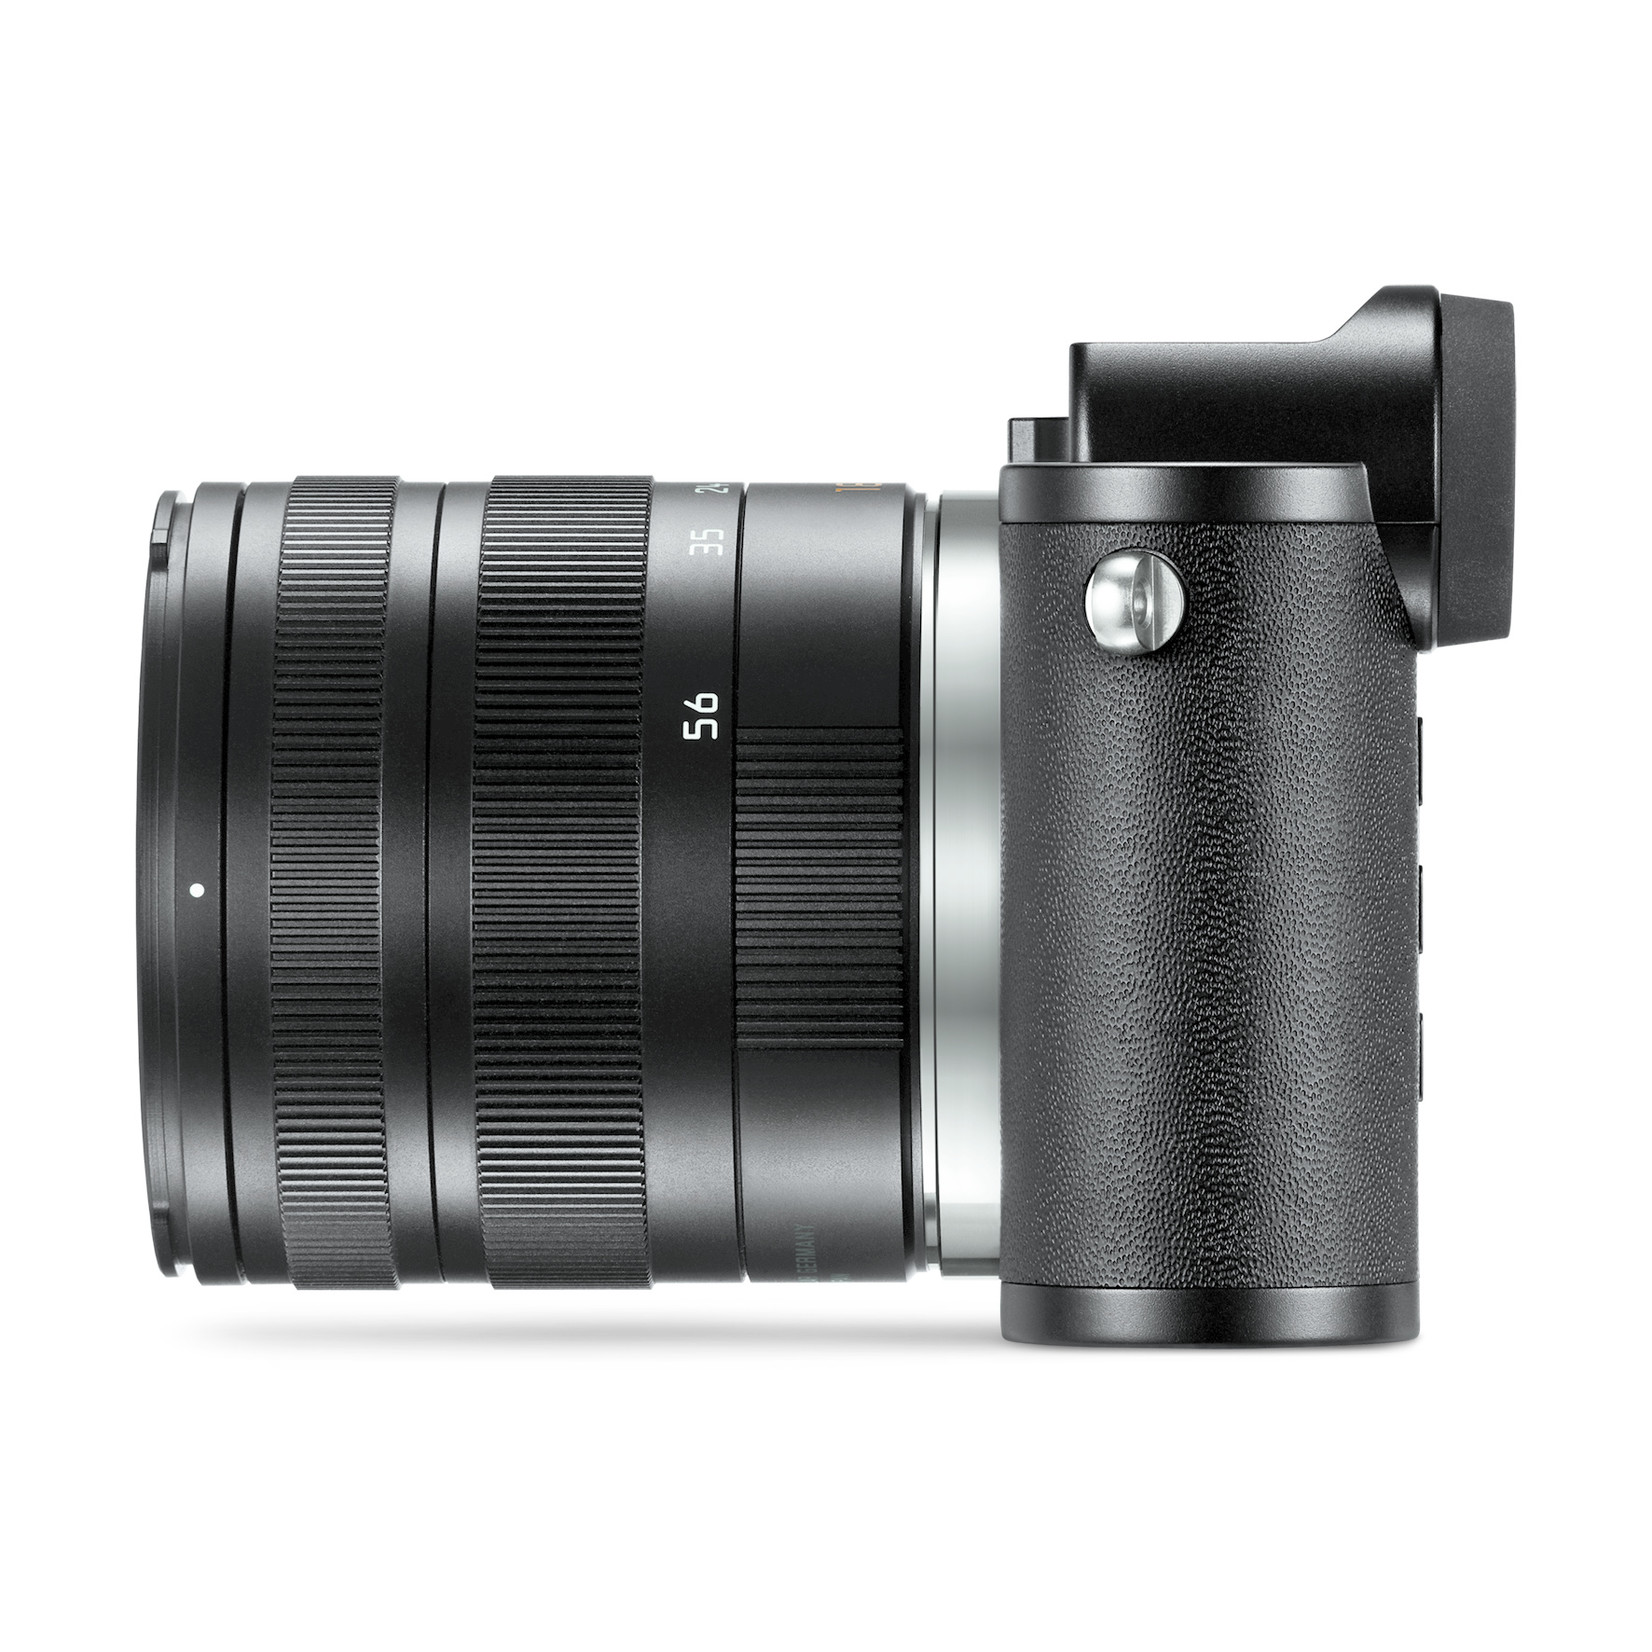 Leica CL w/ 18-56mm f: 3.5-5.6  Lens Kit